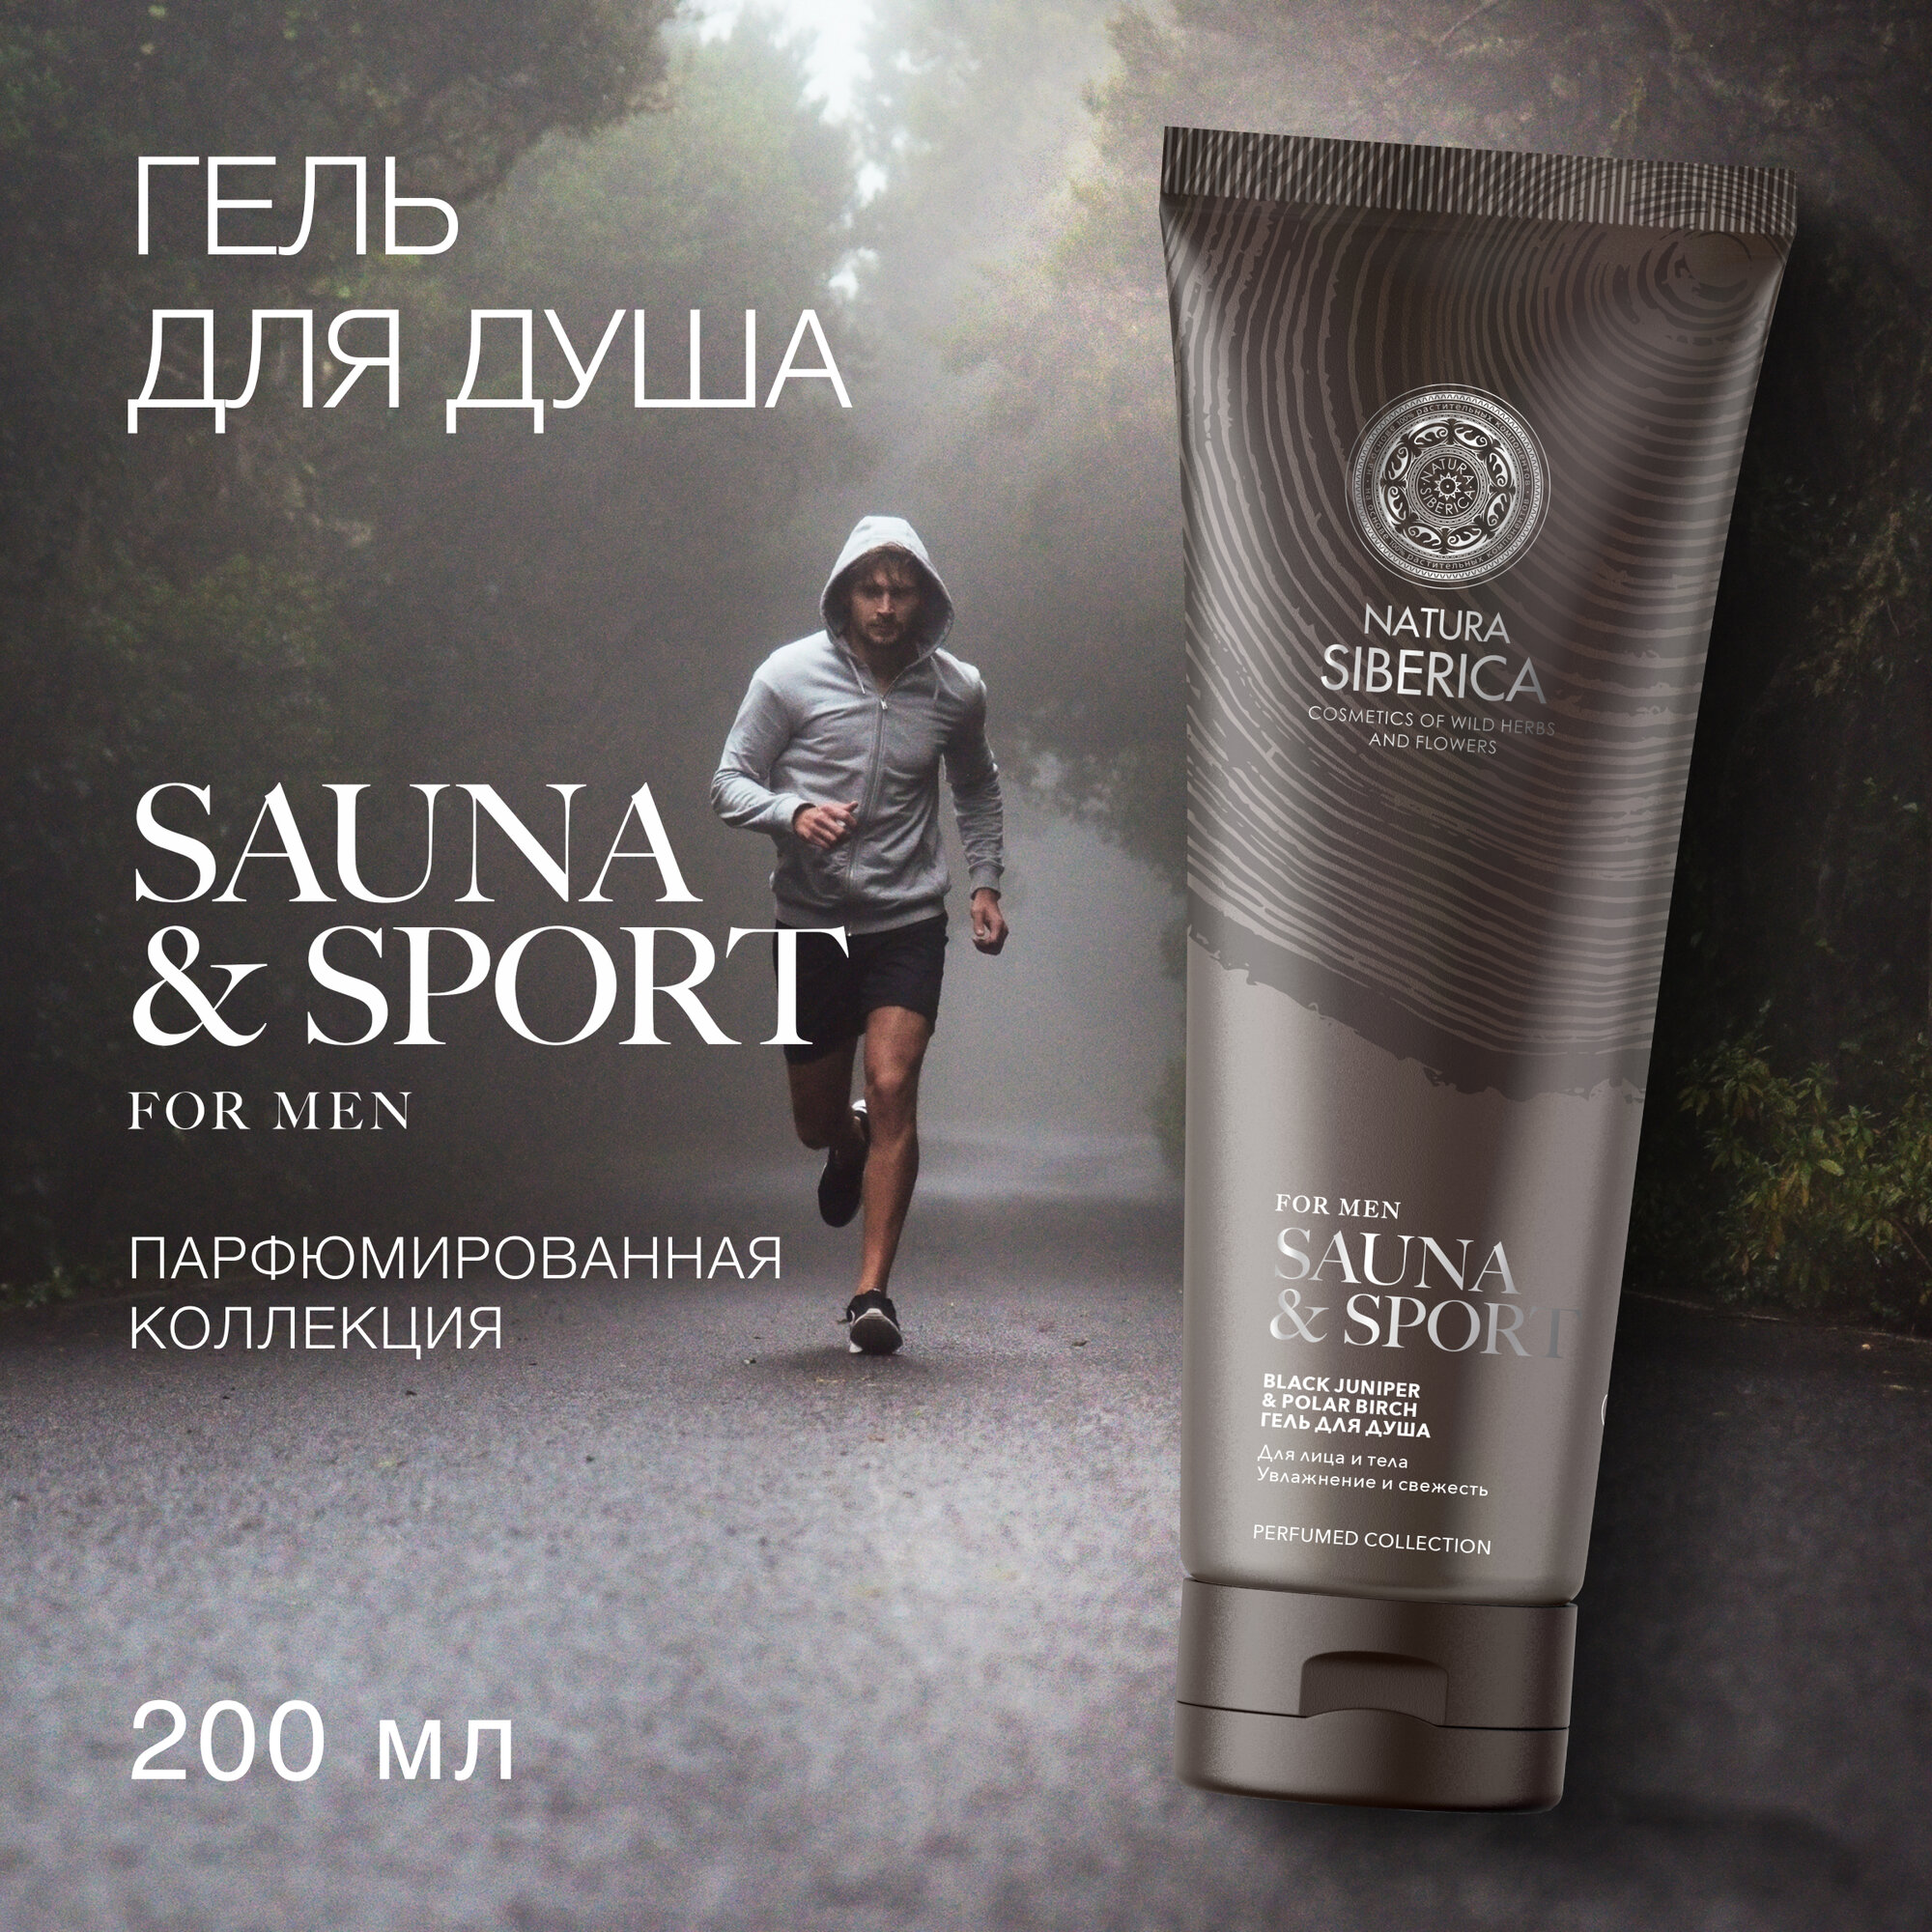 Гель для душа Natura Siberica Увлажнение и свежесть Sauna & Sport for Men, 200 мл